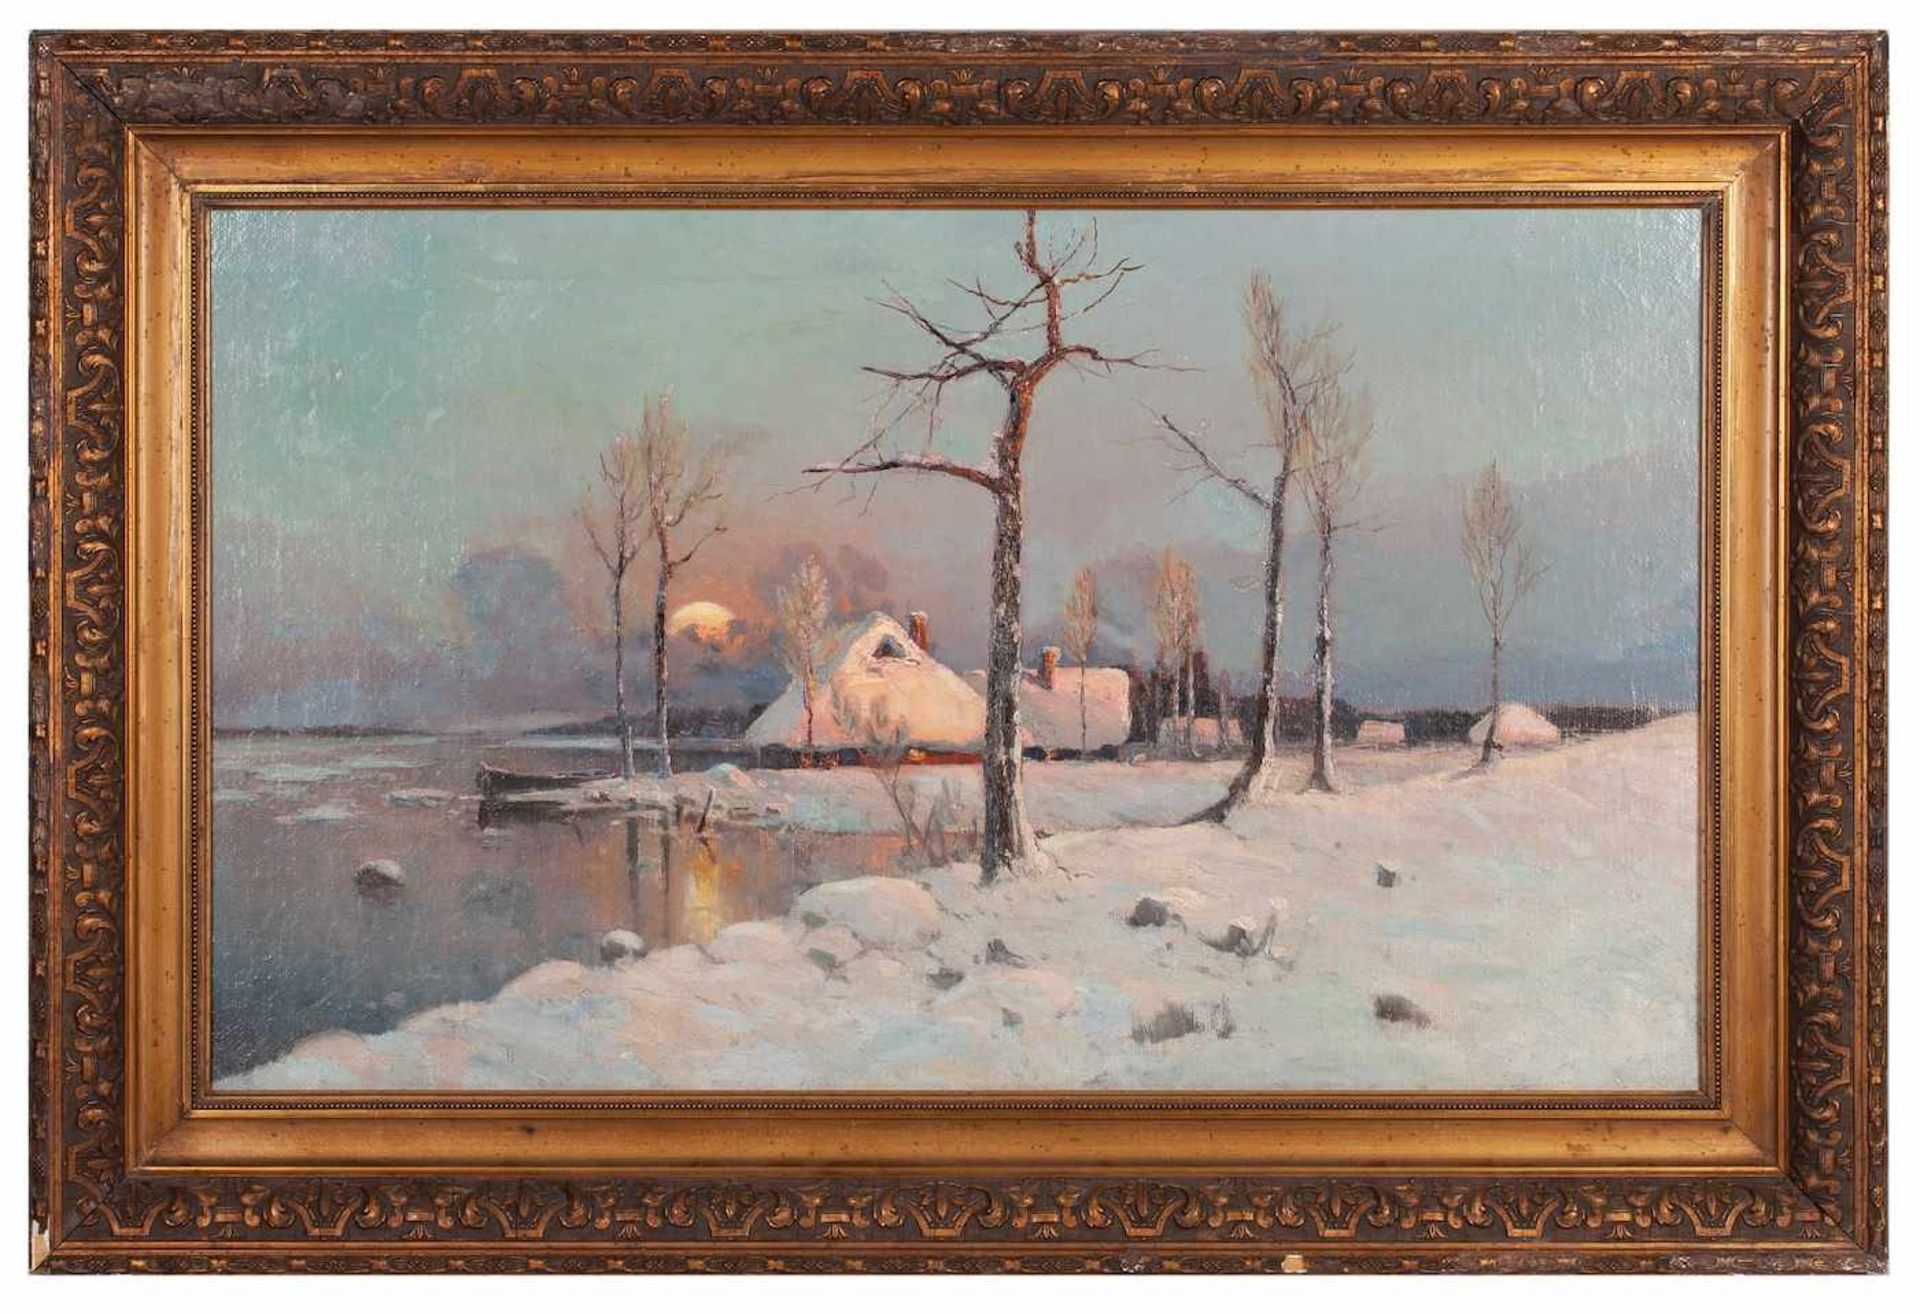 Julius von Klever studio “Winter Landscape”Julius von Klever studio “Winter Landscape”. Oil on